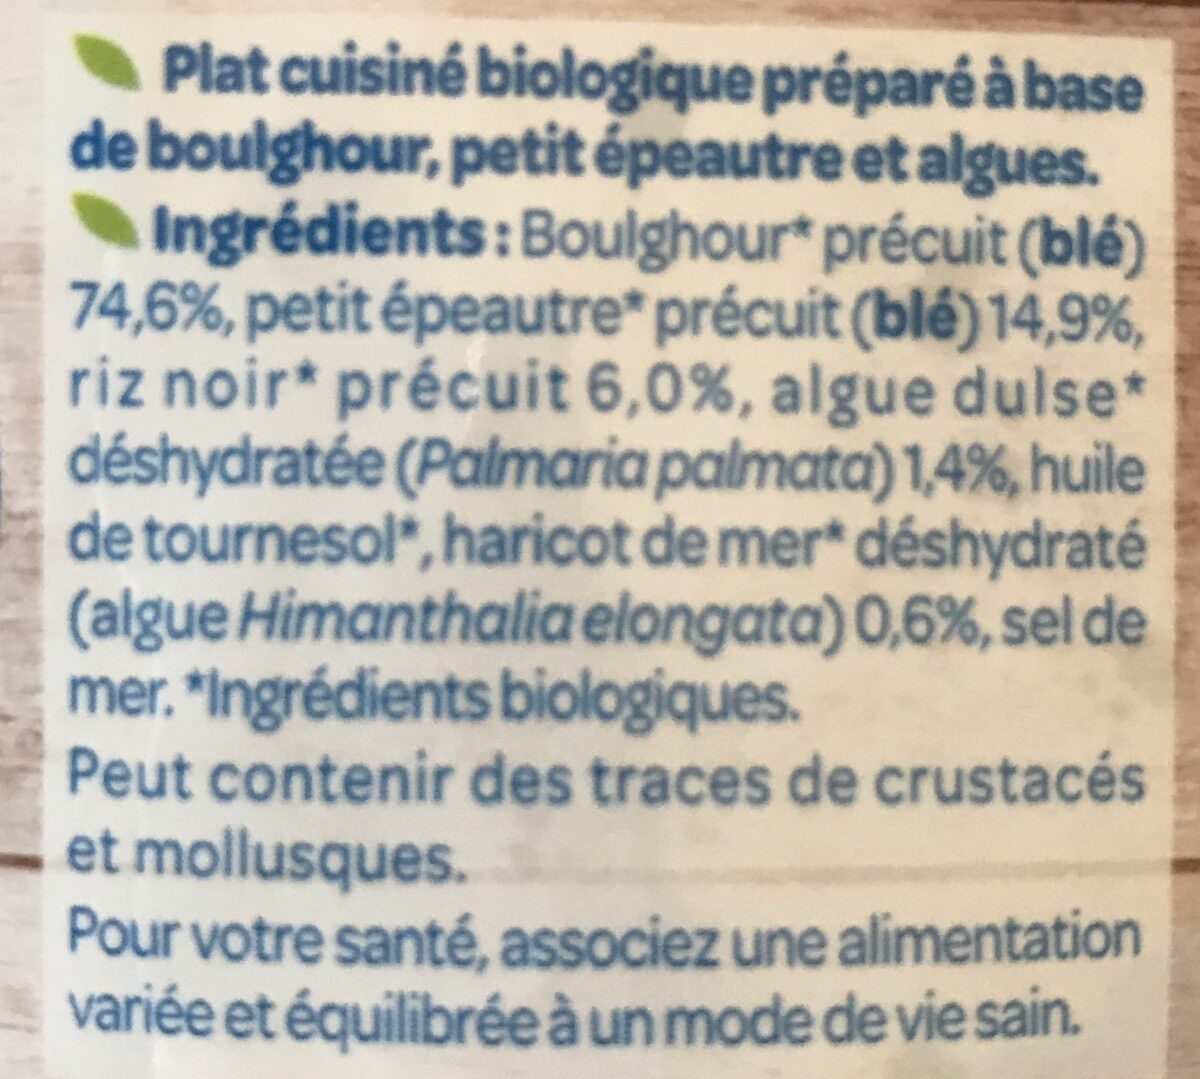 Boulghour petit epeautre et algues - Ingredients - fr